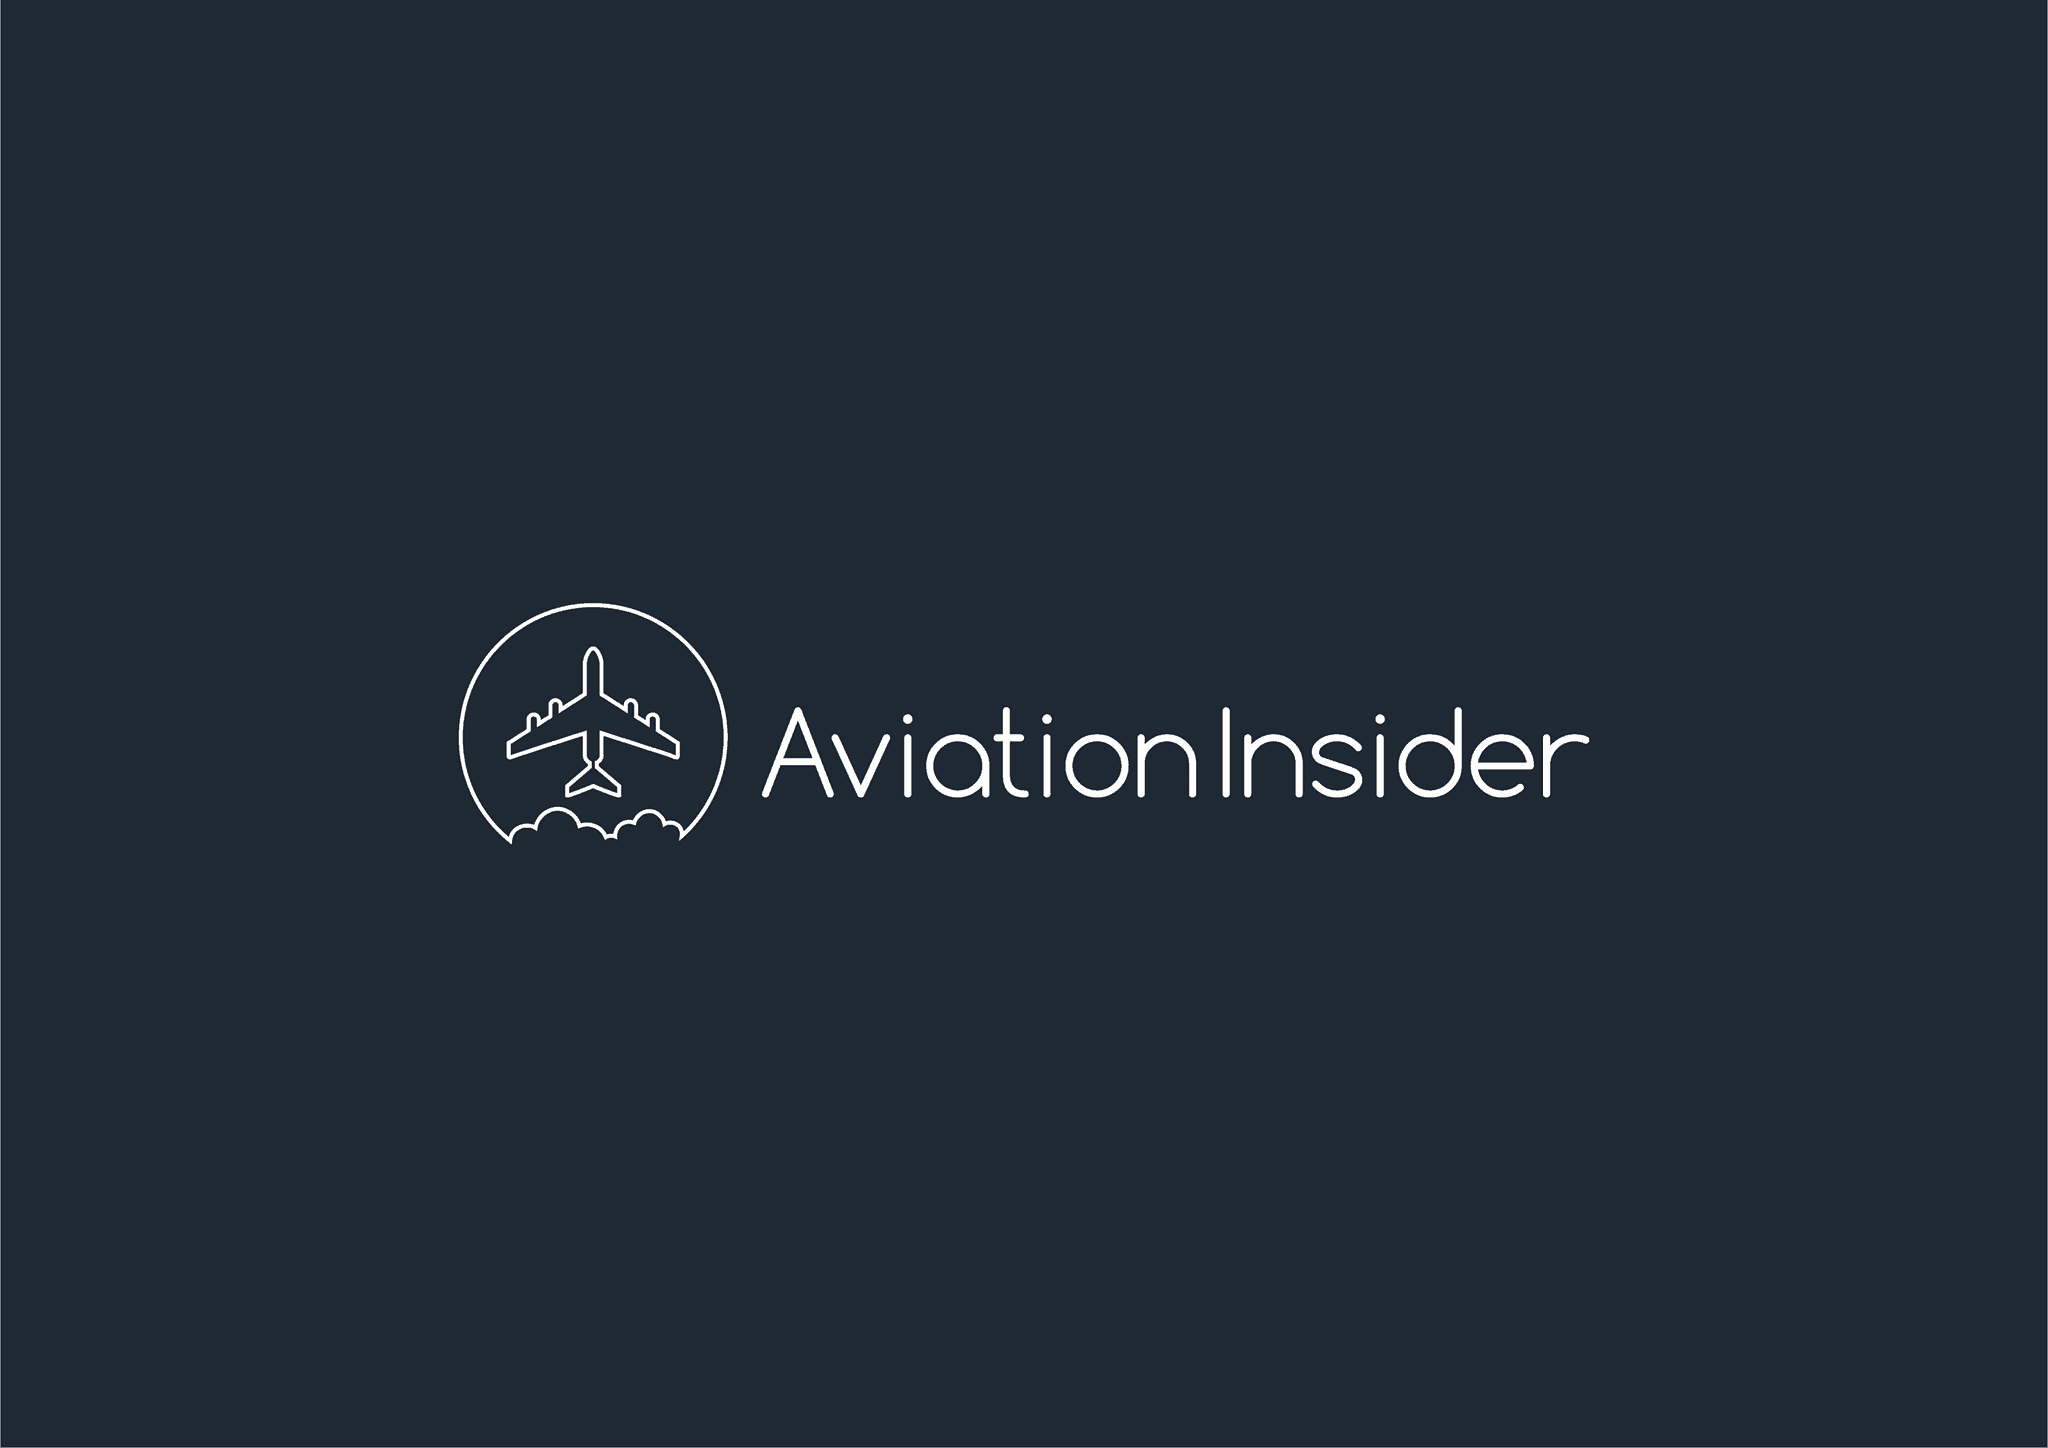 Aviation Insider logo